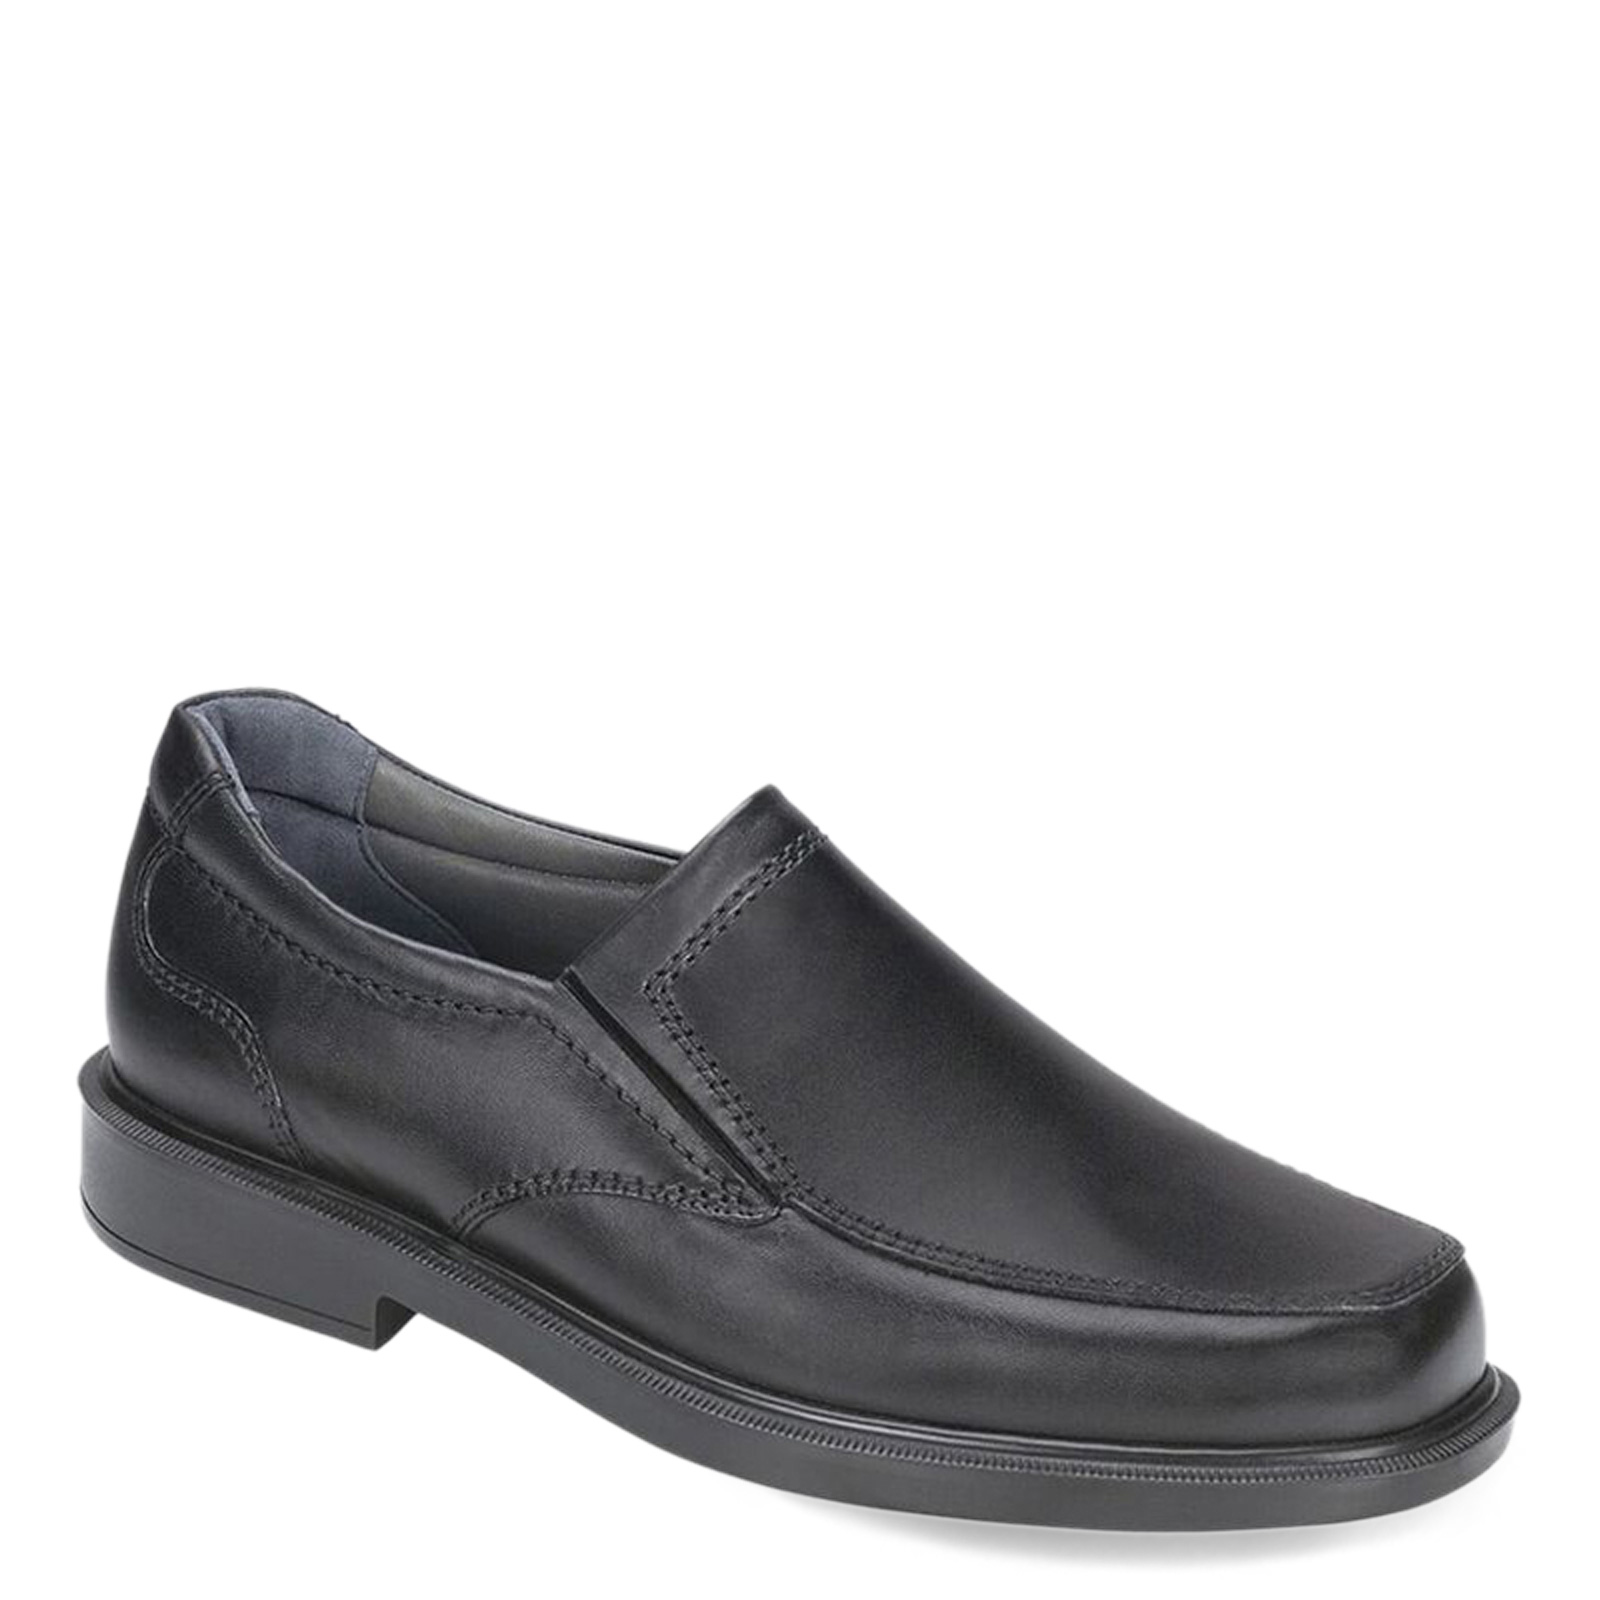 Pre-owned Sas Men's , Diplomat Loafer Diplomat Black Black Leather